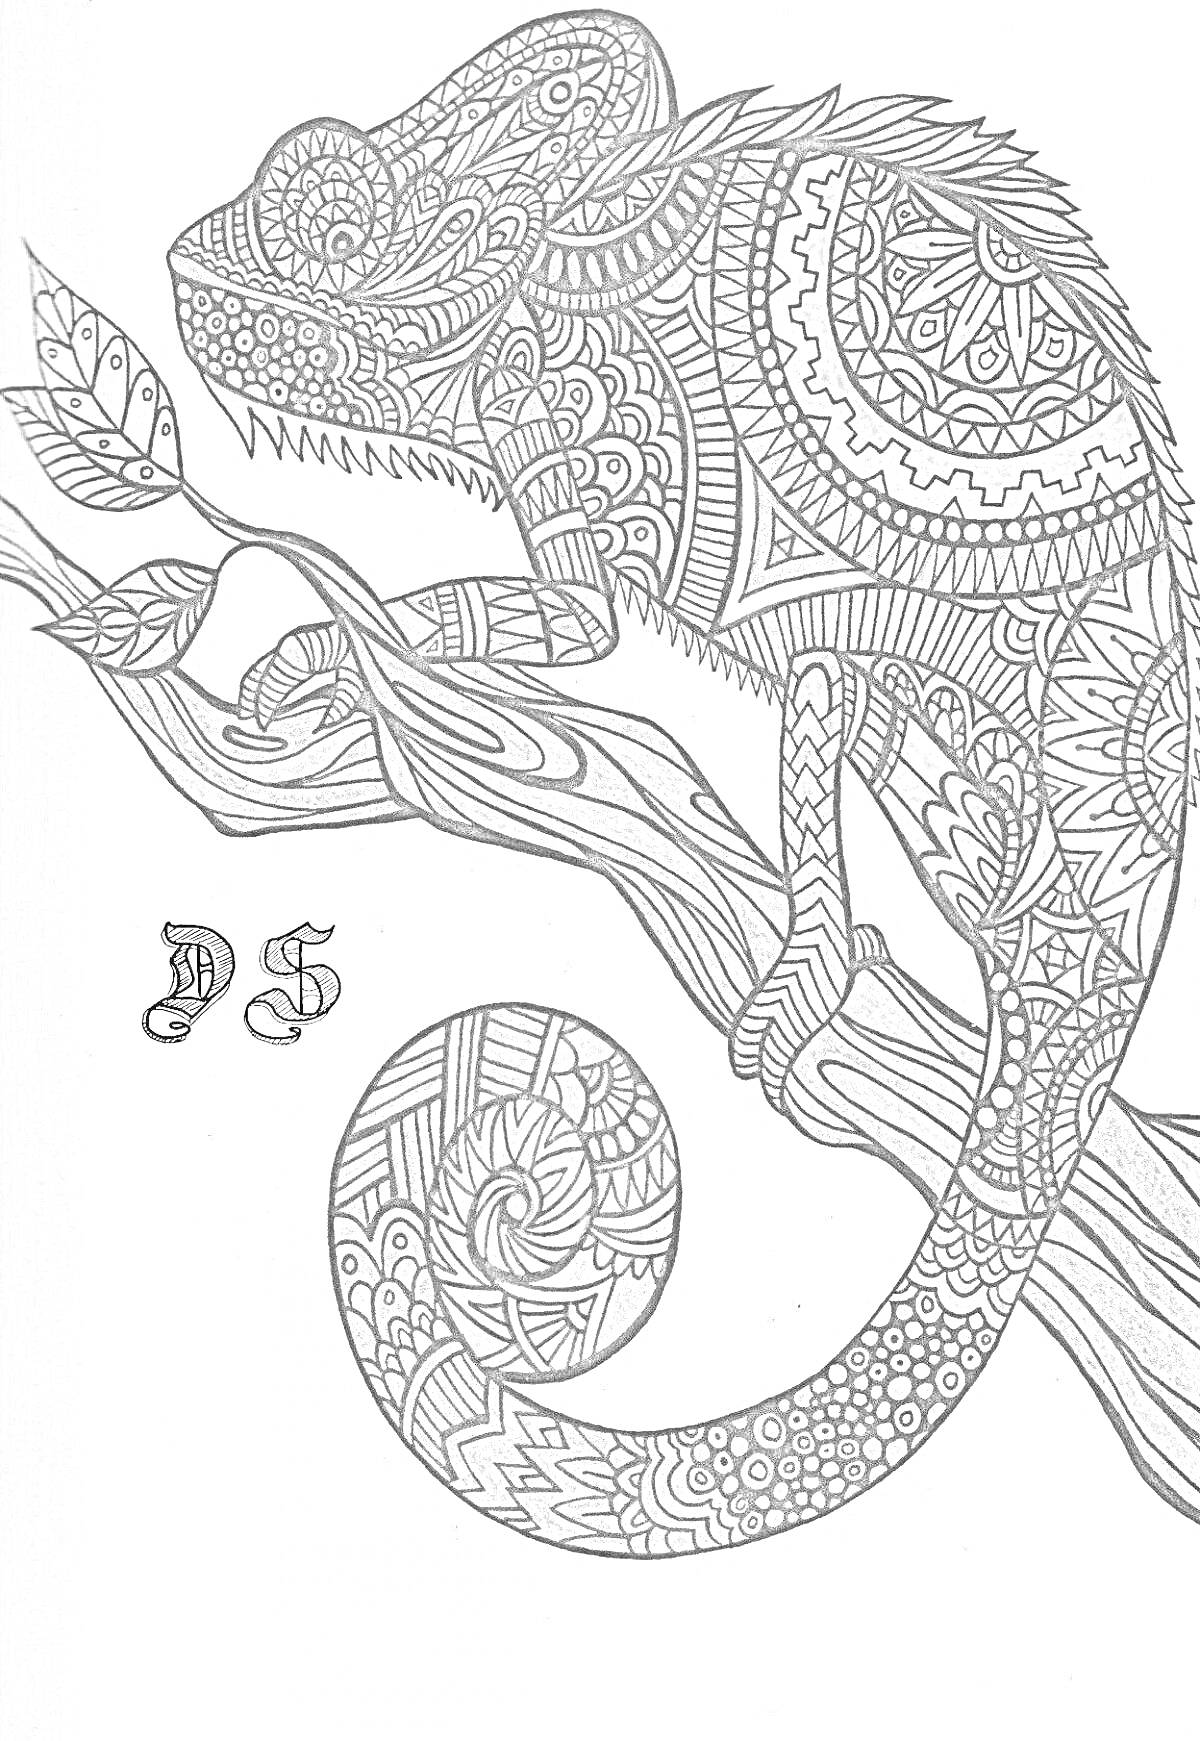 Раскраска Хамелеон на дереве с декоративными узорами